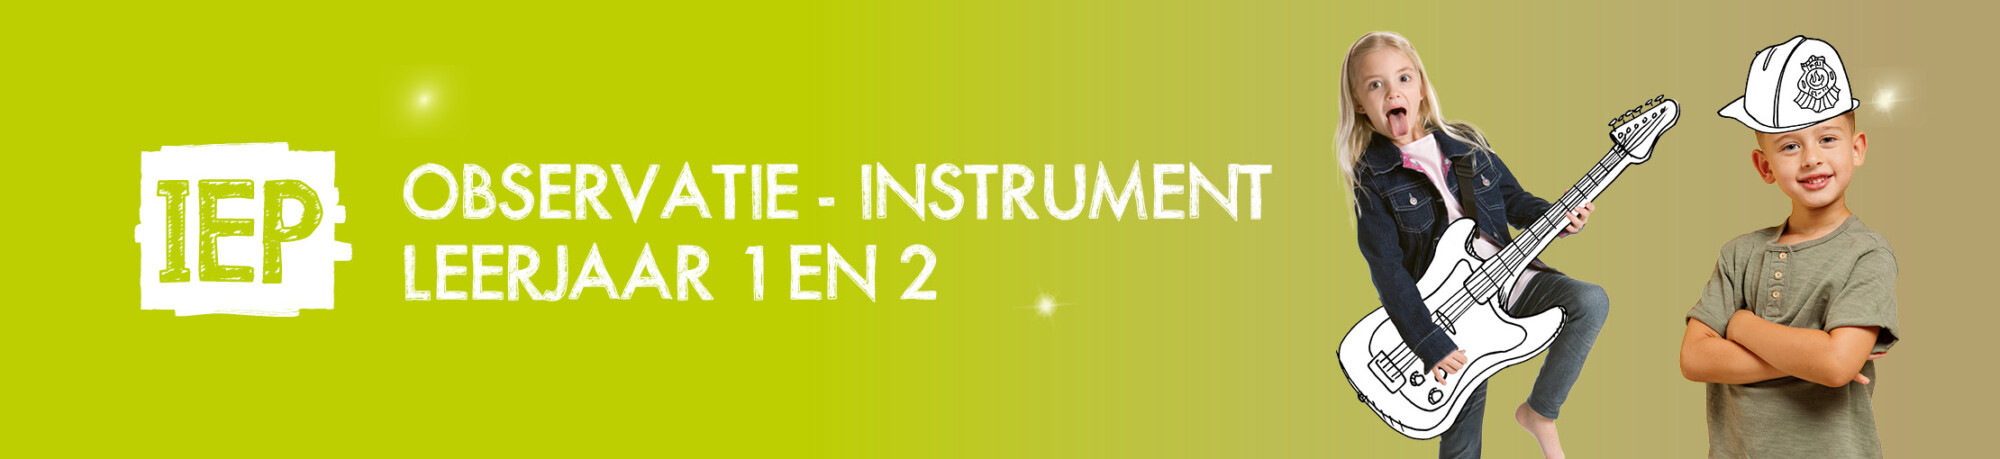 Observatie-instrument leerjaar 1 en 2